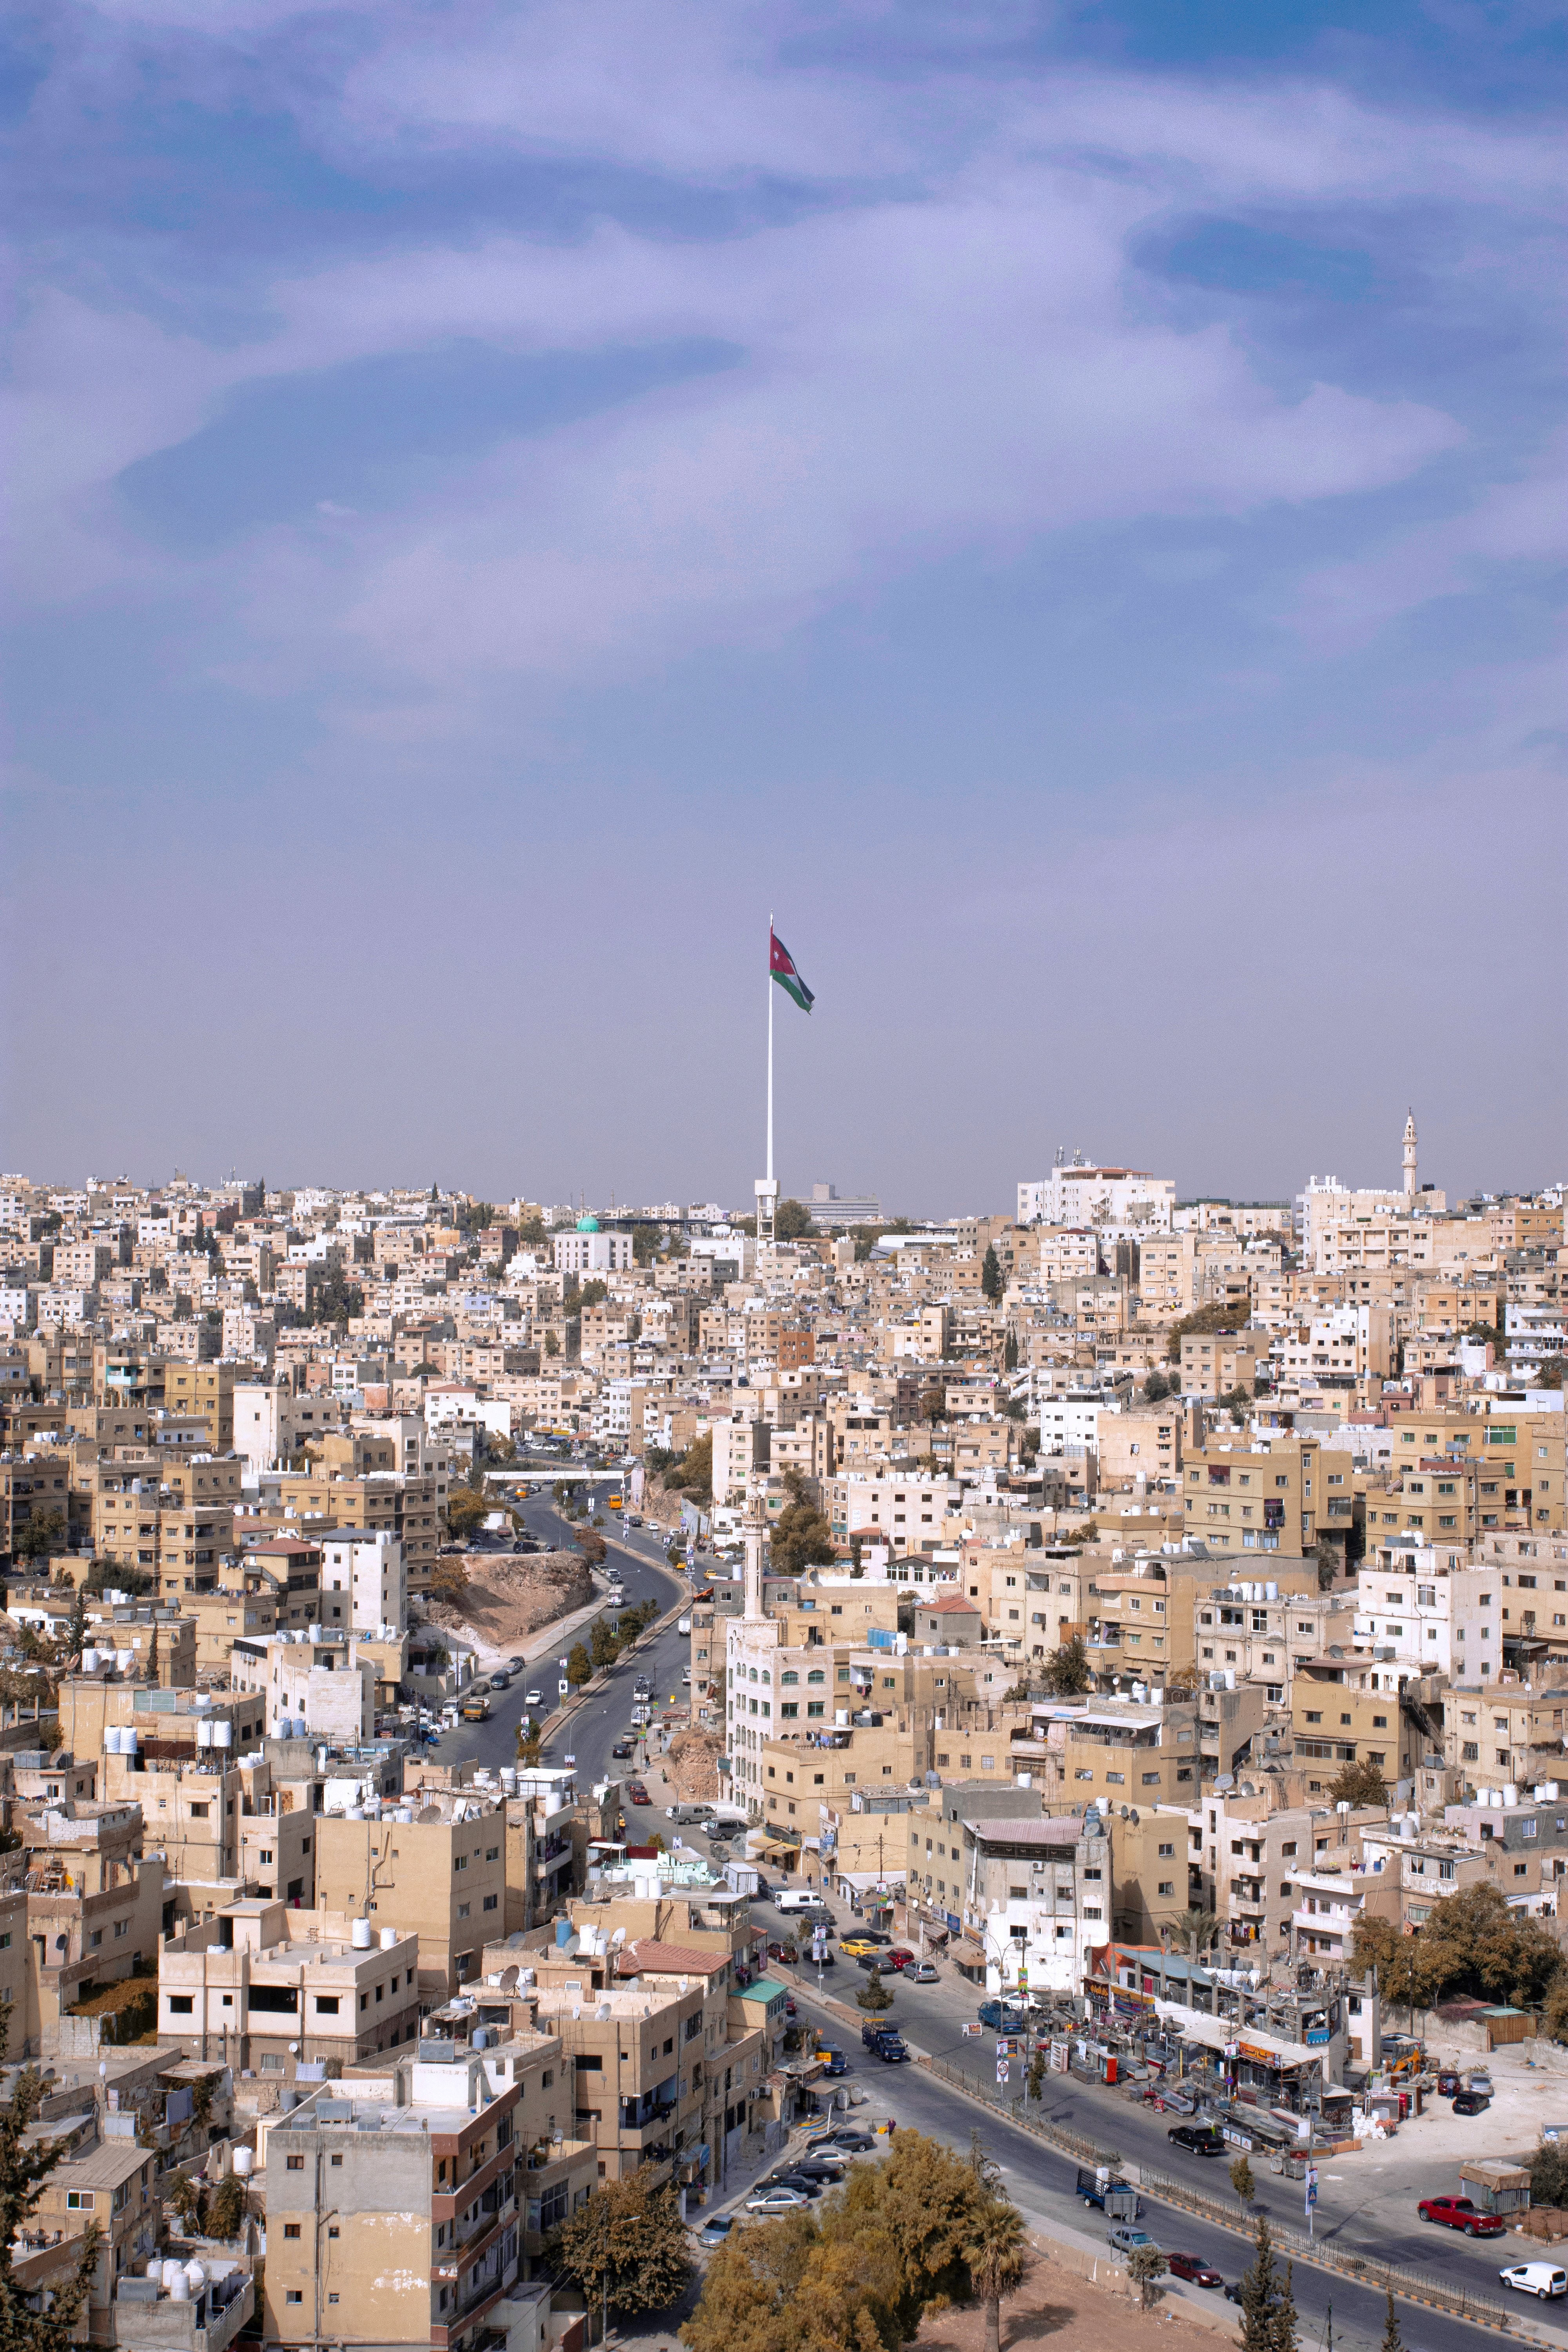 ジェラシュ市の写真上のヨルダンの国旗 